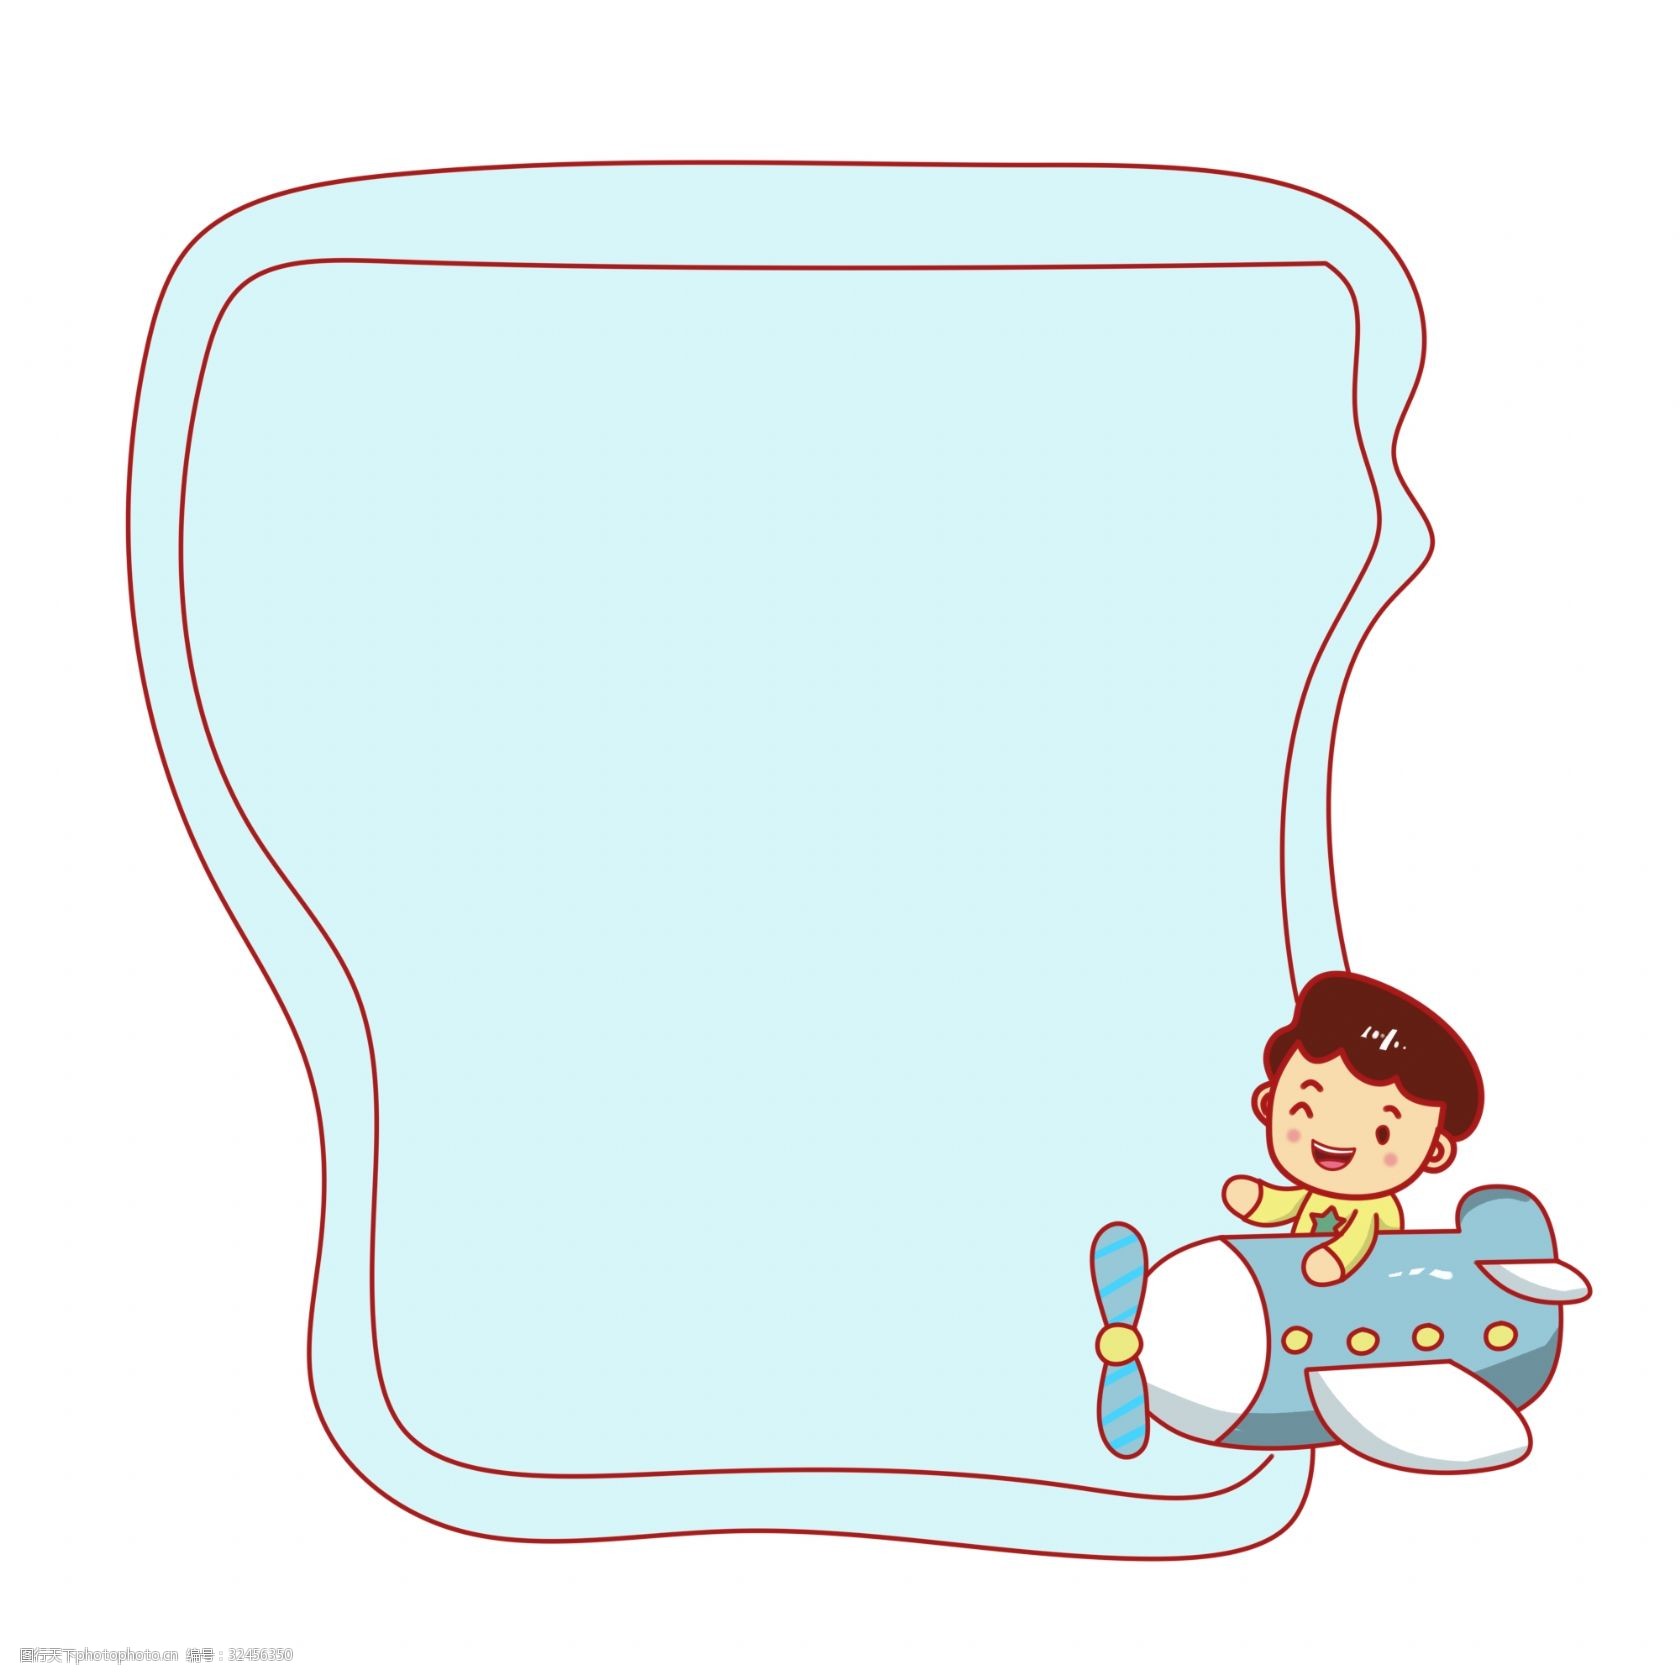 蓝色边框 坐着潜水艇的男孩 边框装饰 创意边框 卡通边框插画